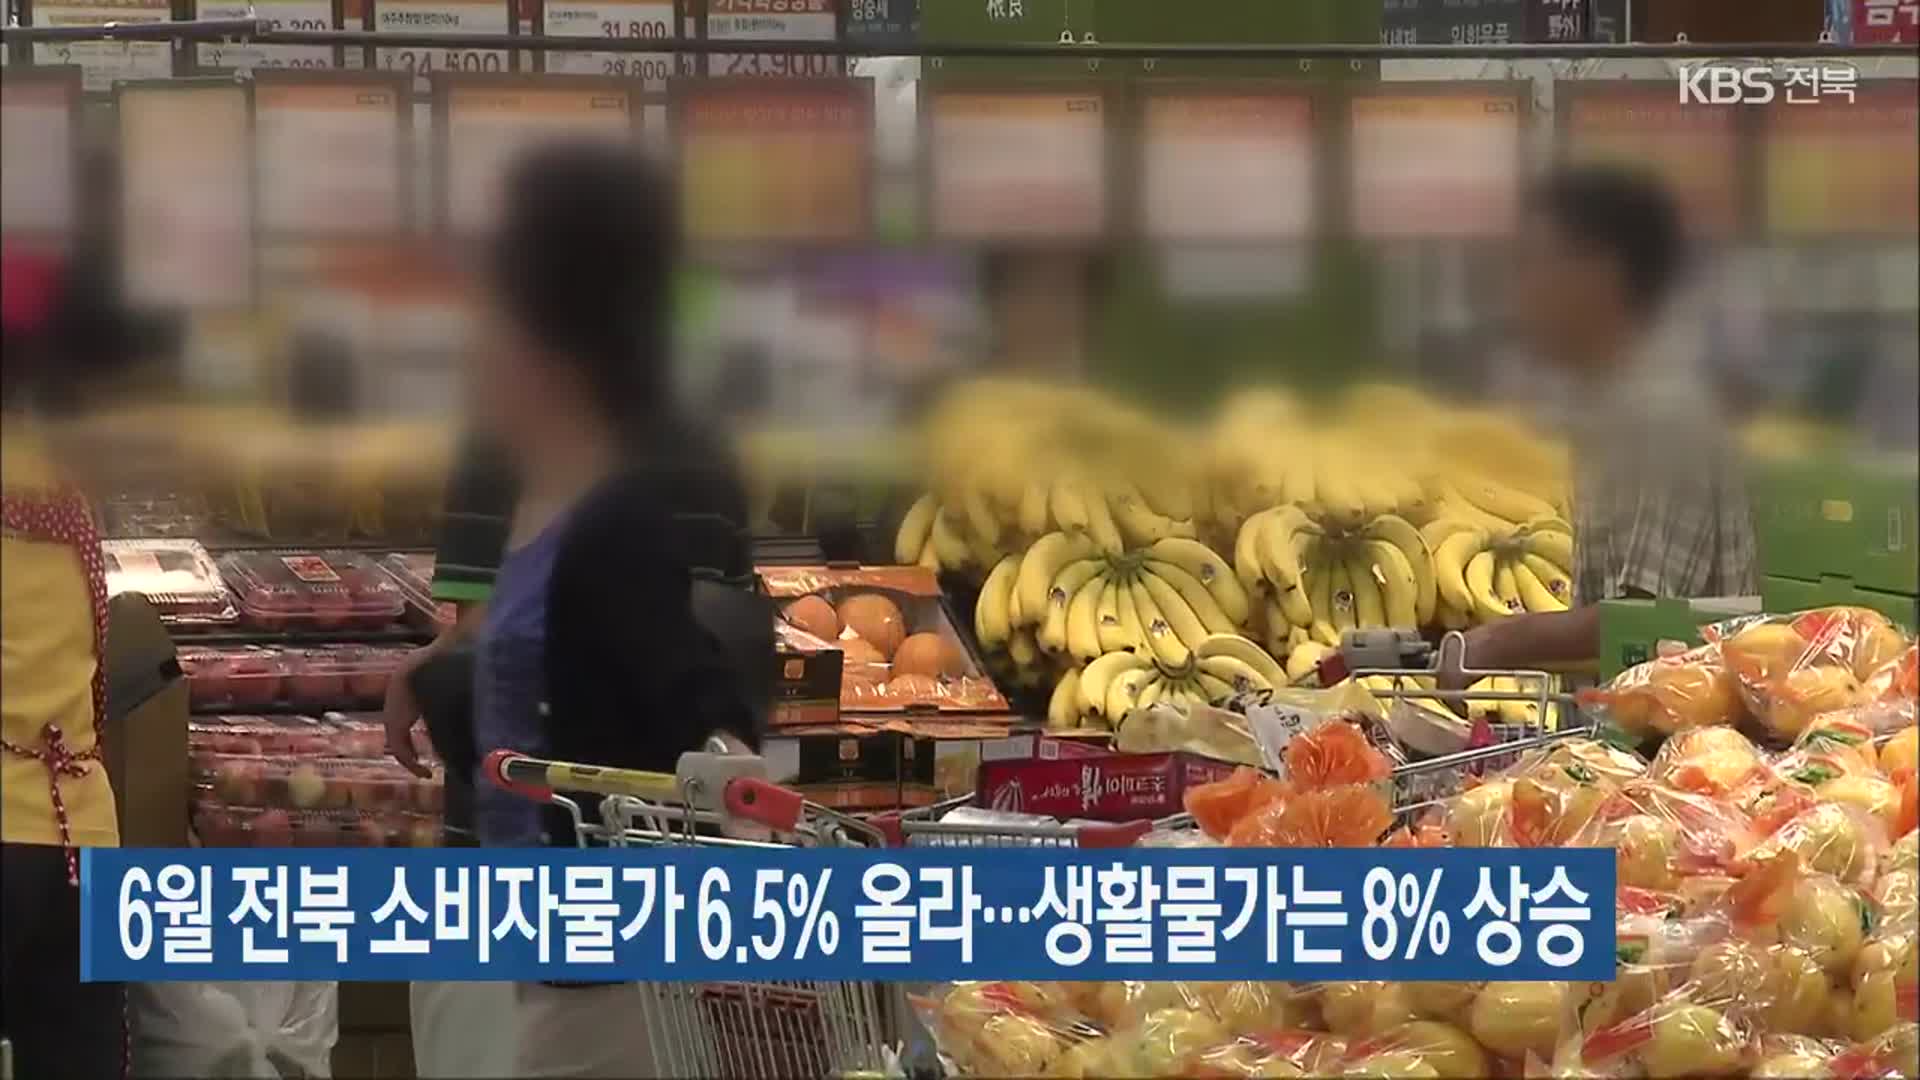 6월 전북 소비자물가 6.5% 올라…생활물가는 8% 상승